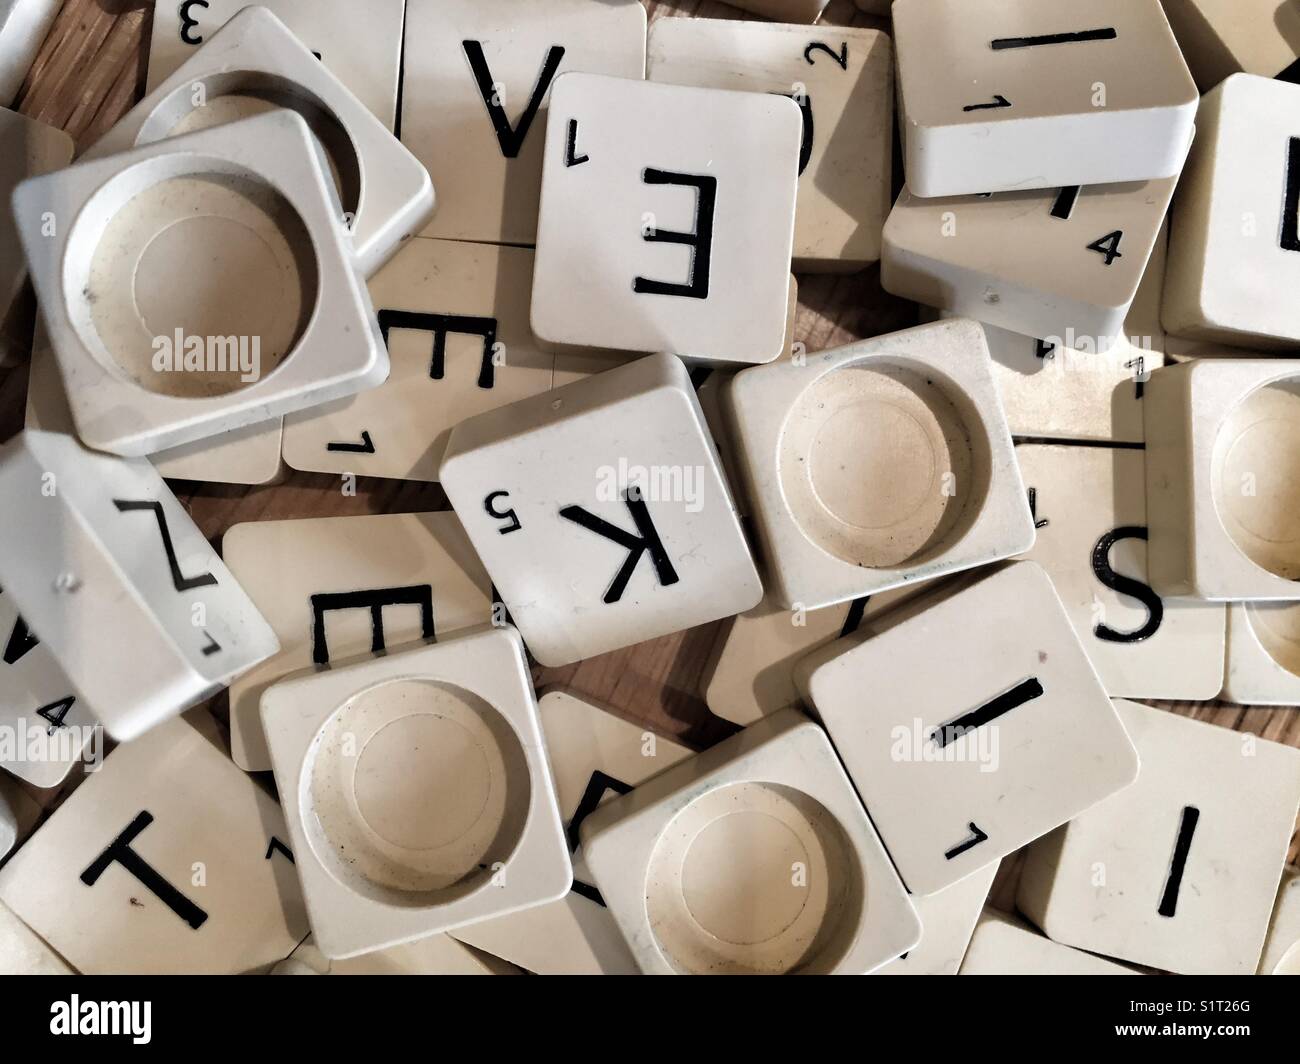 Fichas de Scrabble Foto de stock